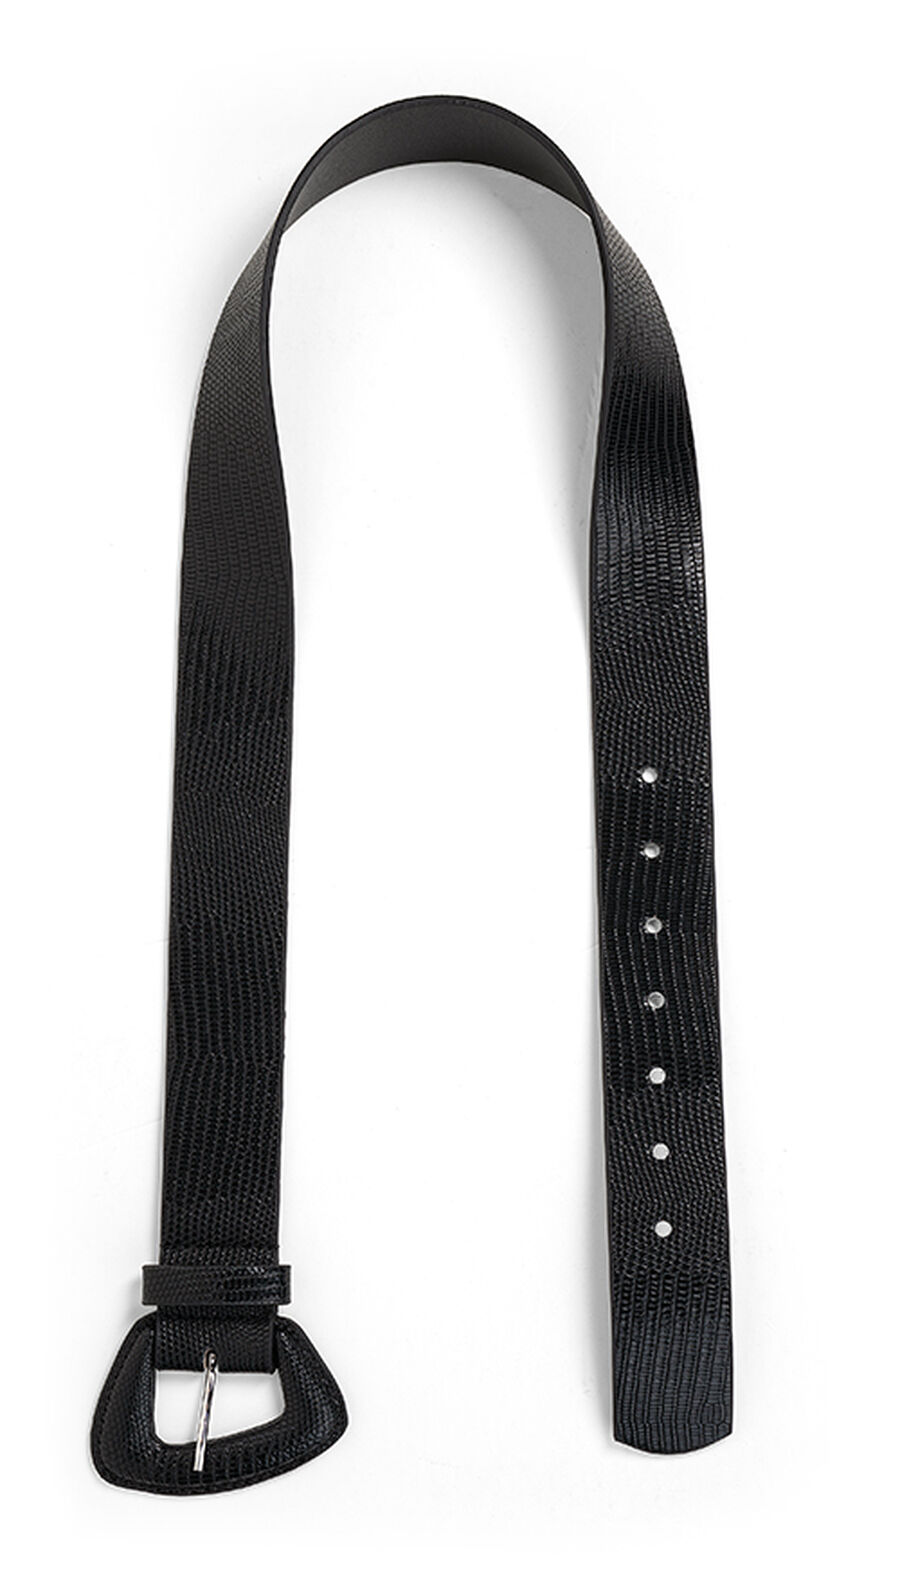 Cinto de Cintura com Fivela Assimétrica, , large.